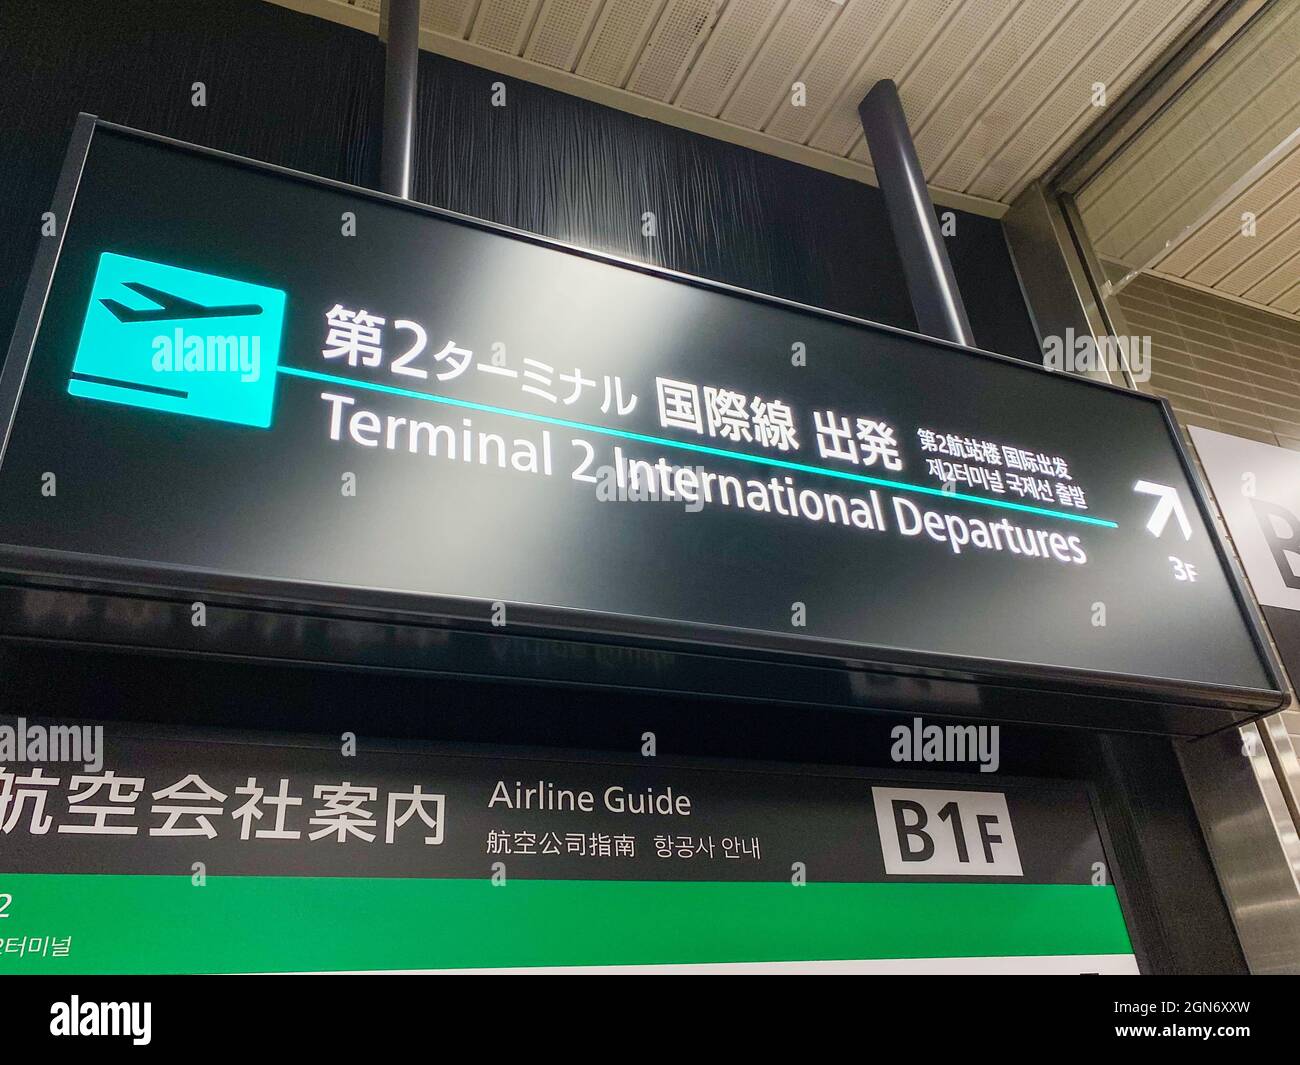 Tokyo, Japon - 24 novembre 2019 : aéroport international de Haneda Tokyo, panneau terminal 2 Banque D'Images